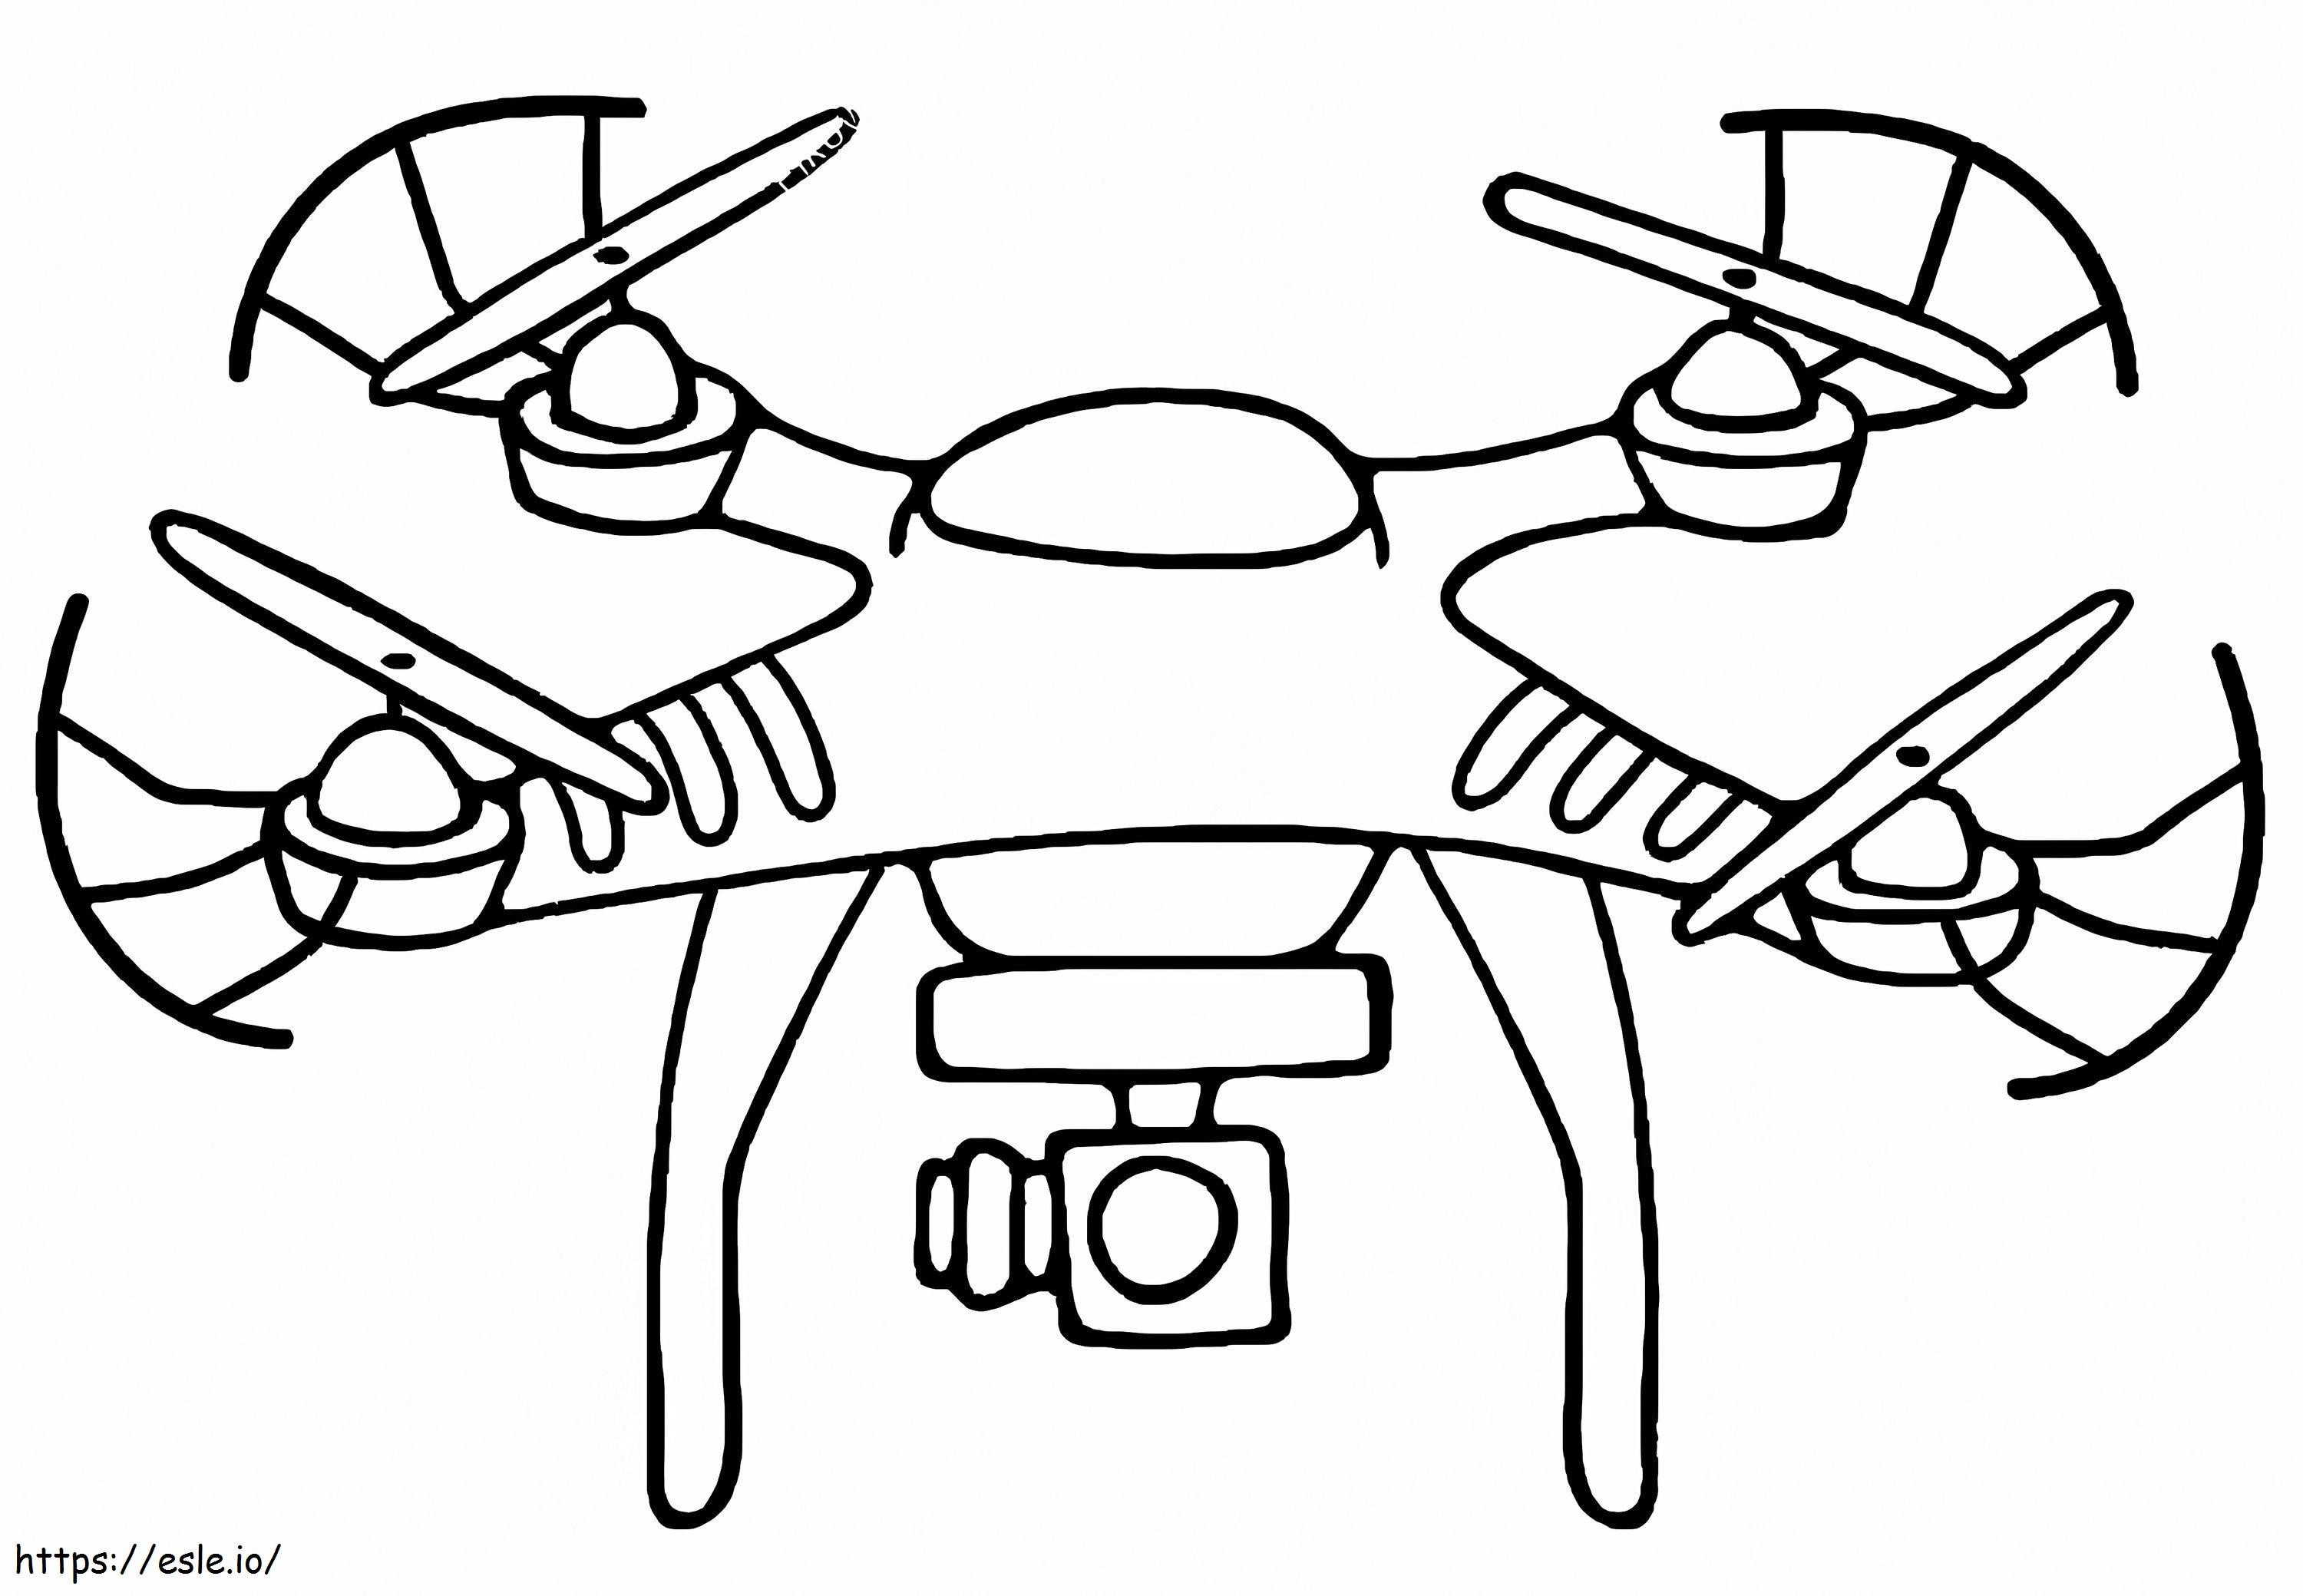 Coloriage Drone gratuit imprimable à imprimer dessin